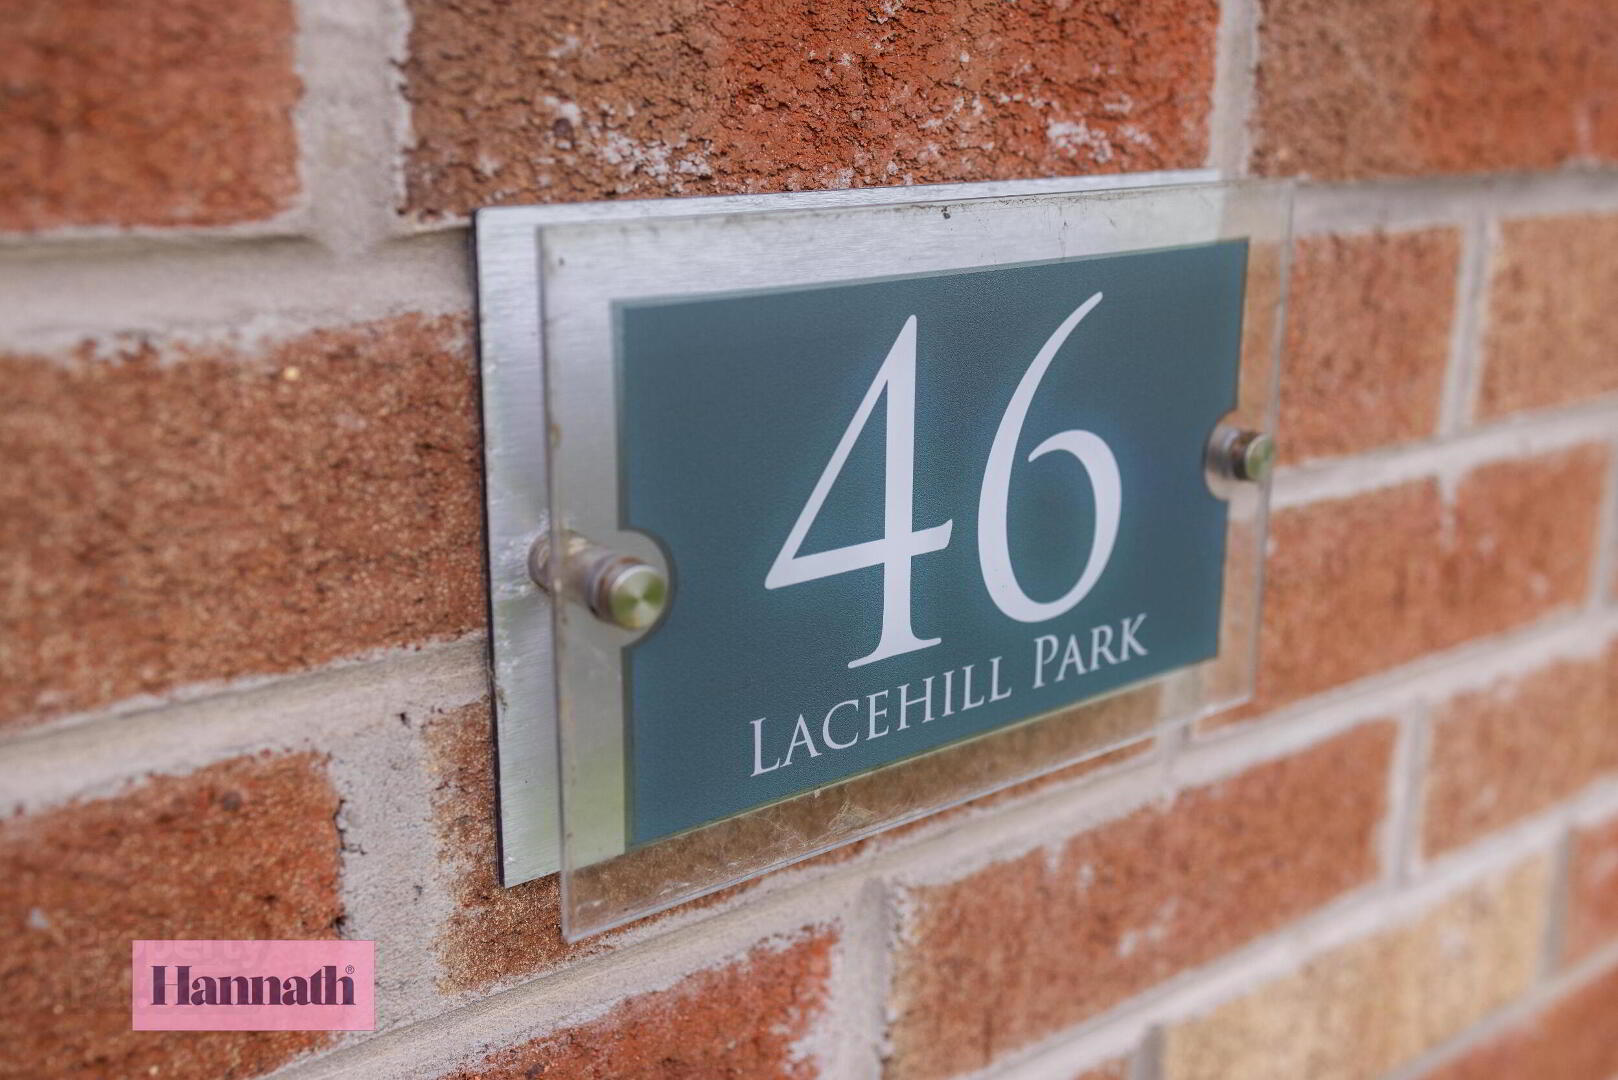 46 Lacehill Park